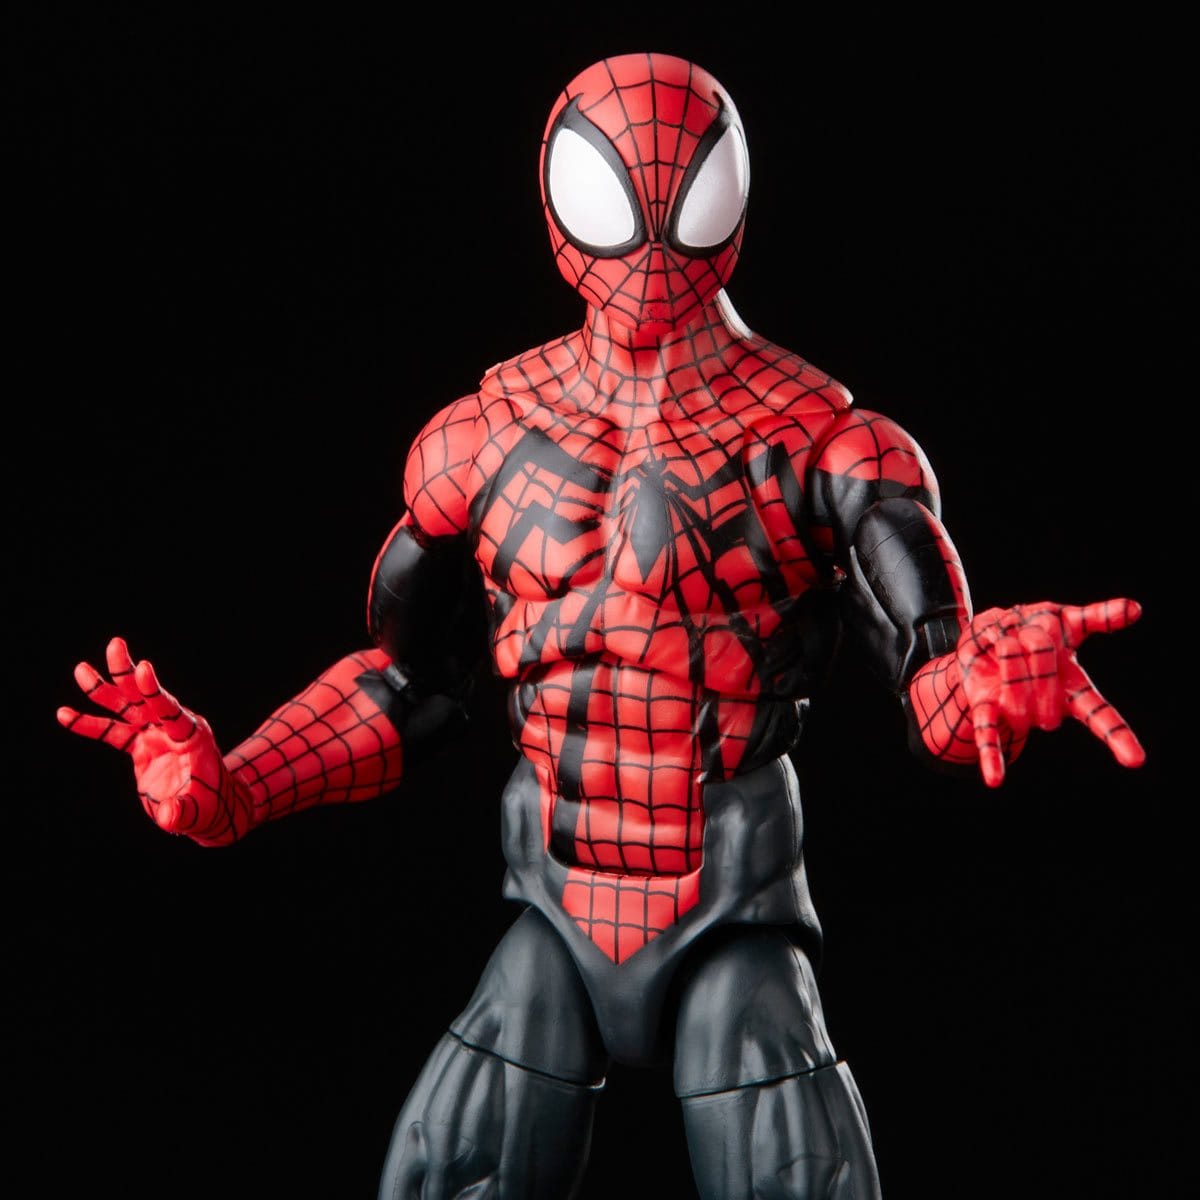 Spider-Man Retro Marvel Legends Ben Reilly Spider-Man 6-Inch Action Figure Pose